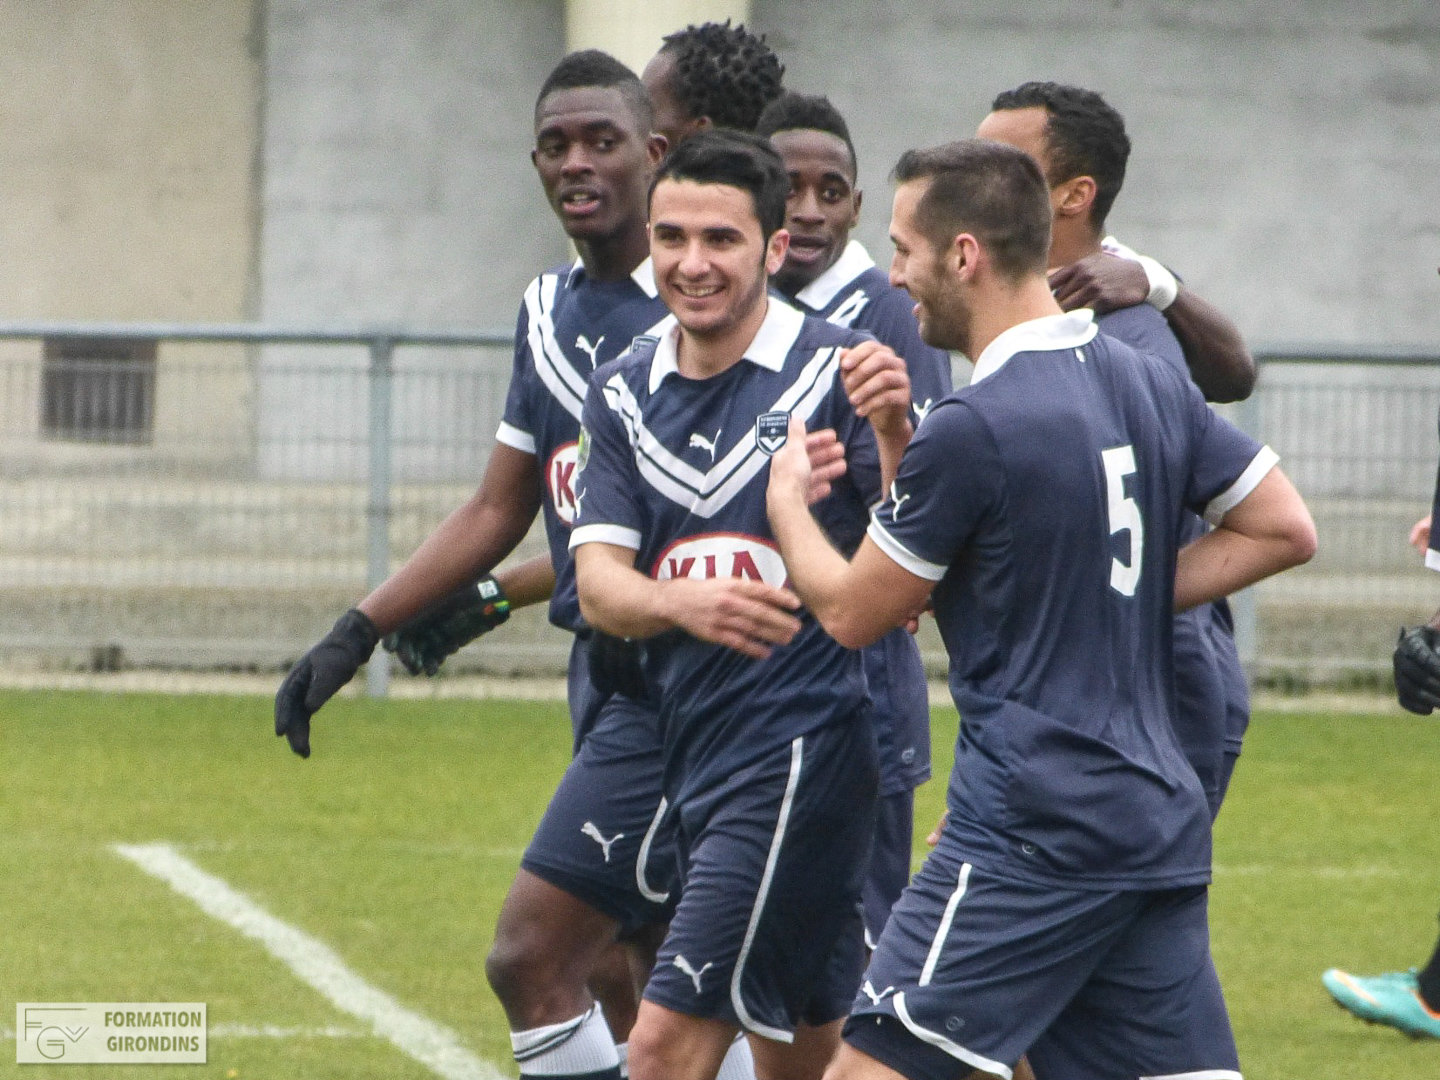 Actualités : Evan Chevalier rejoint officiellement le Stade Bordelais - Formation Girondins 